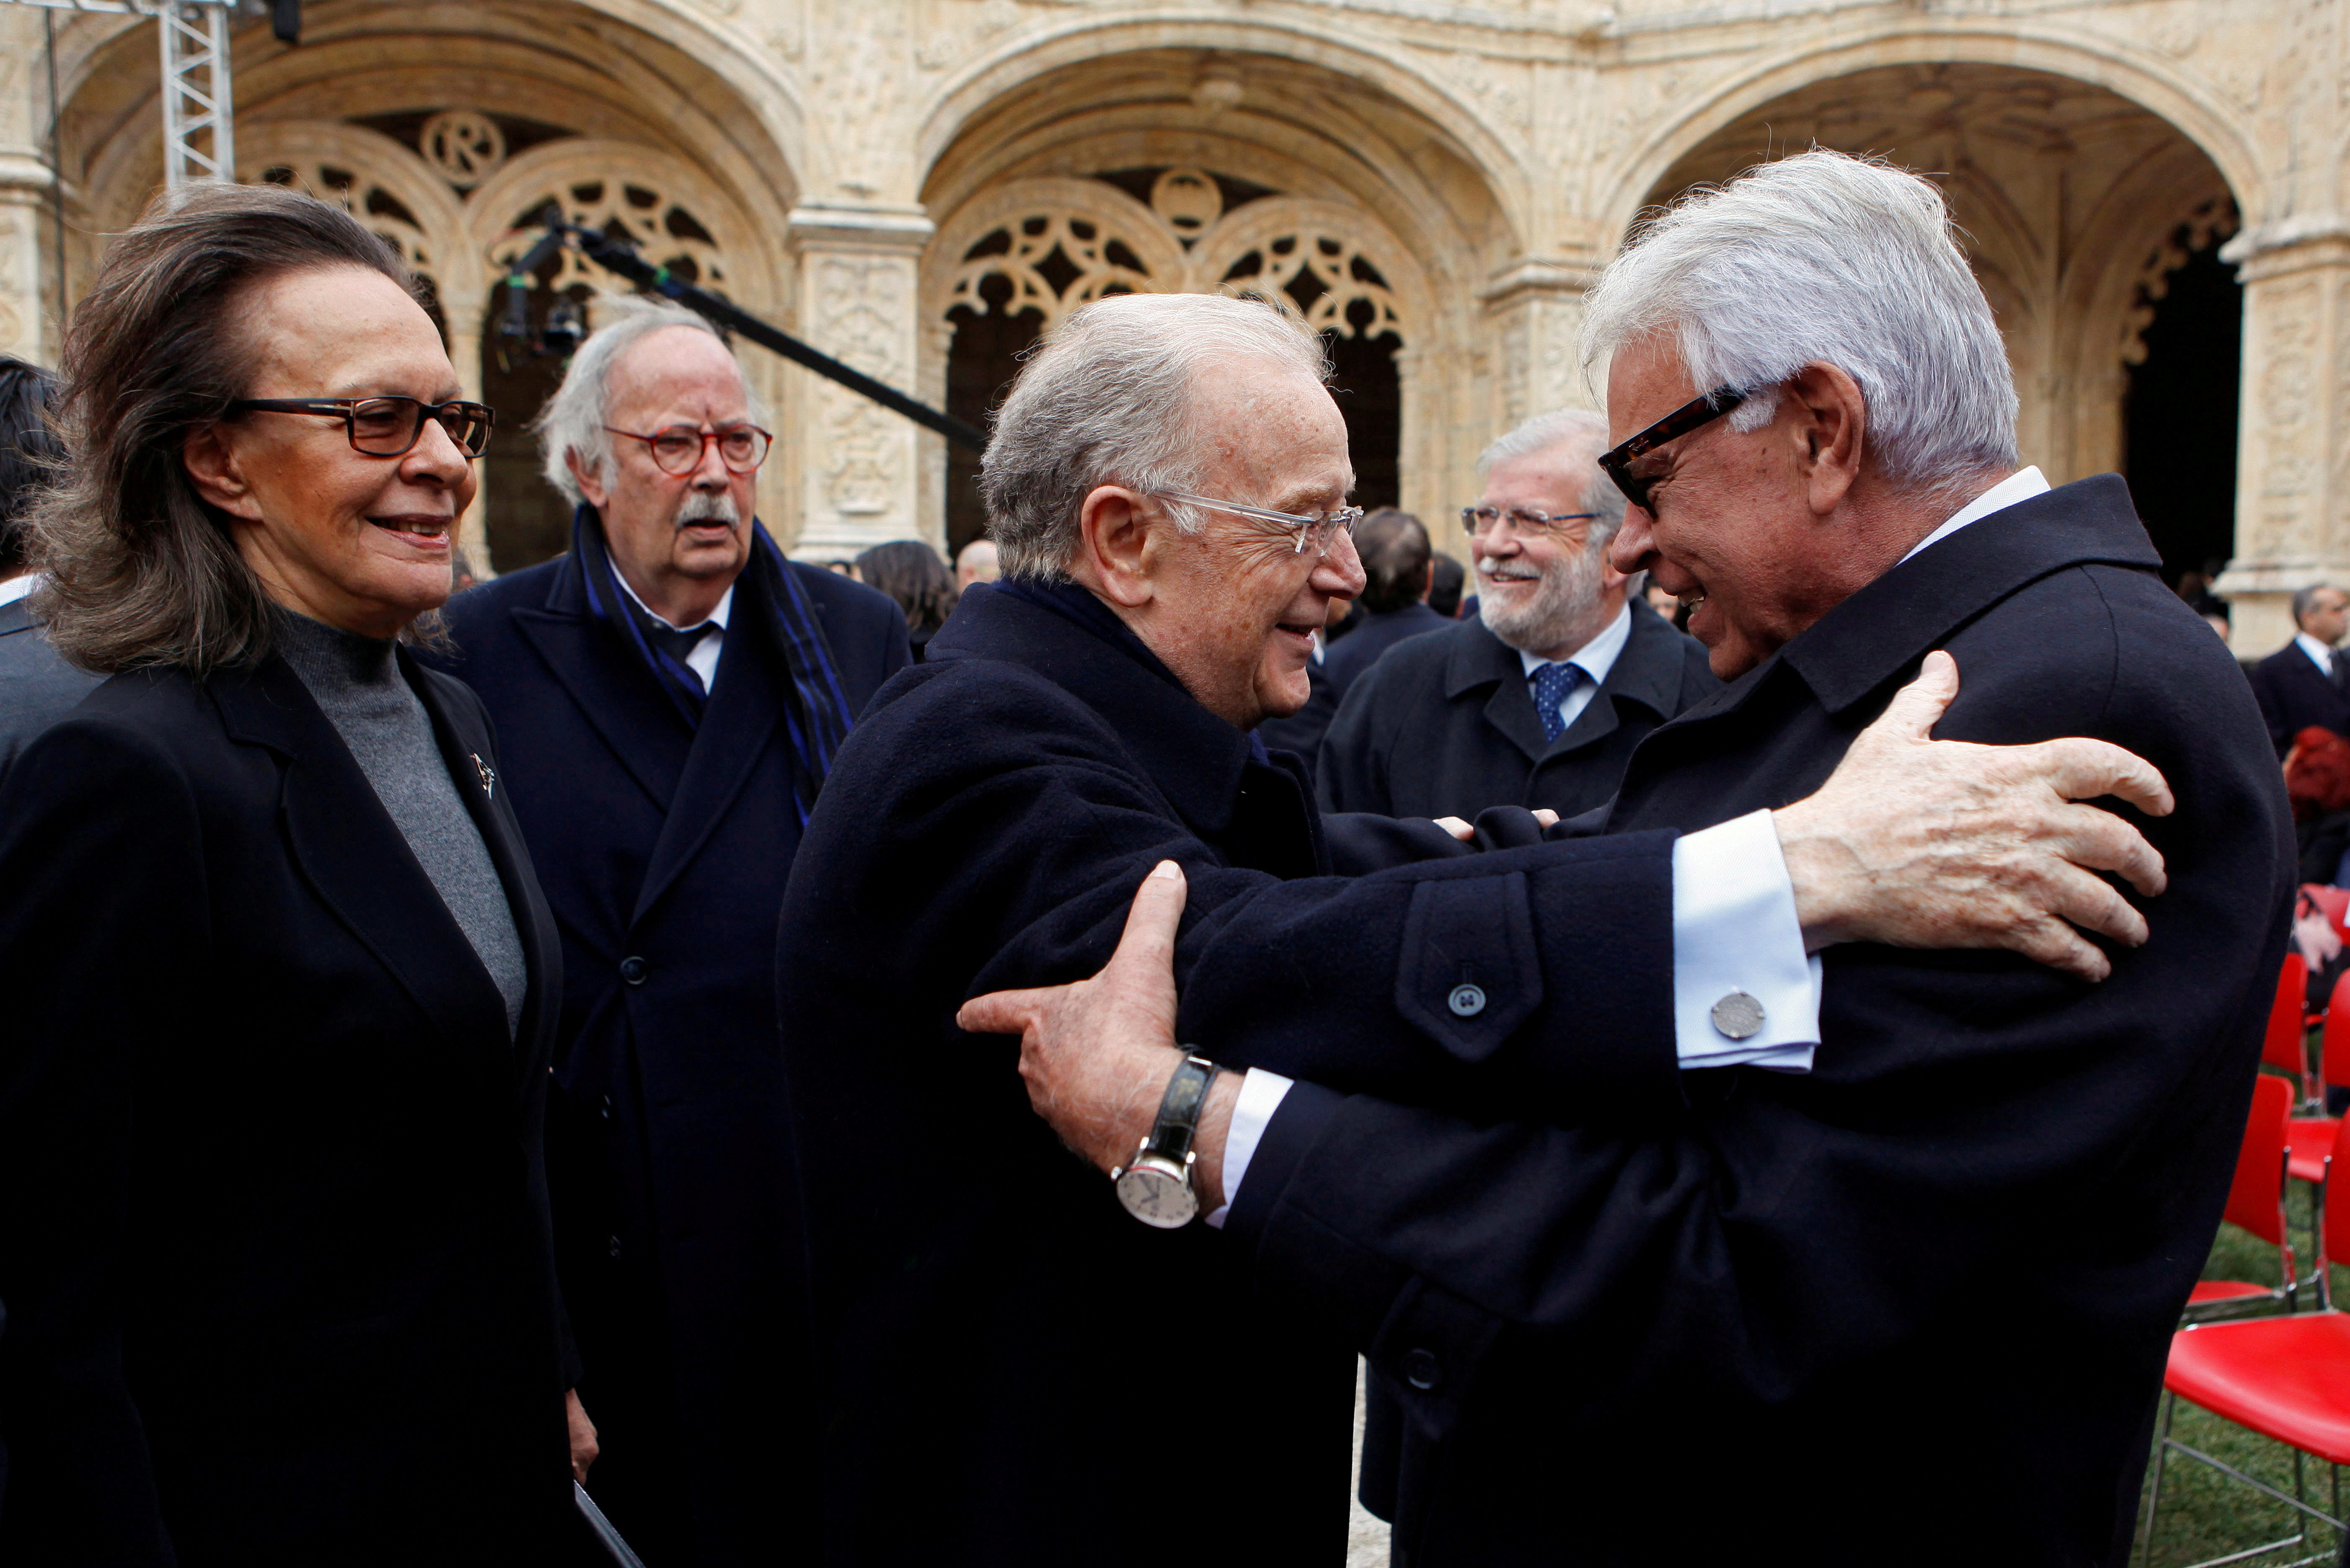 Jorge Sampaio, who showed teeth in Portuguese presidential powers, dies at 81